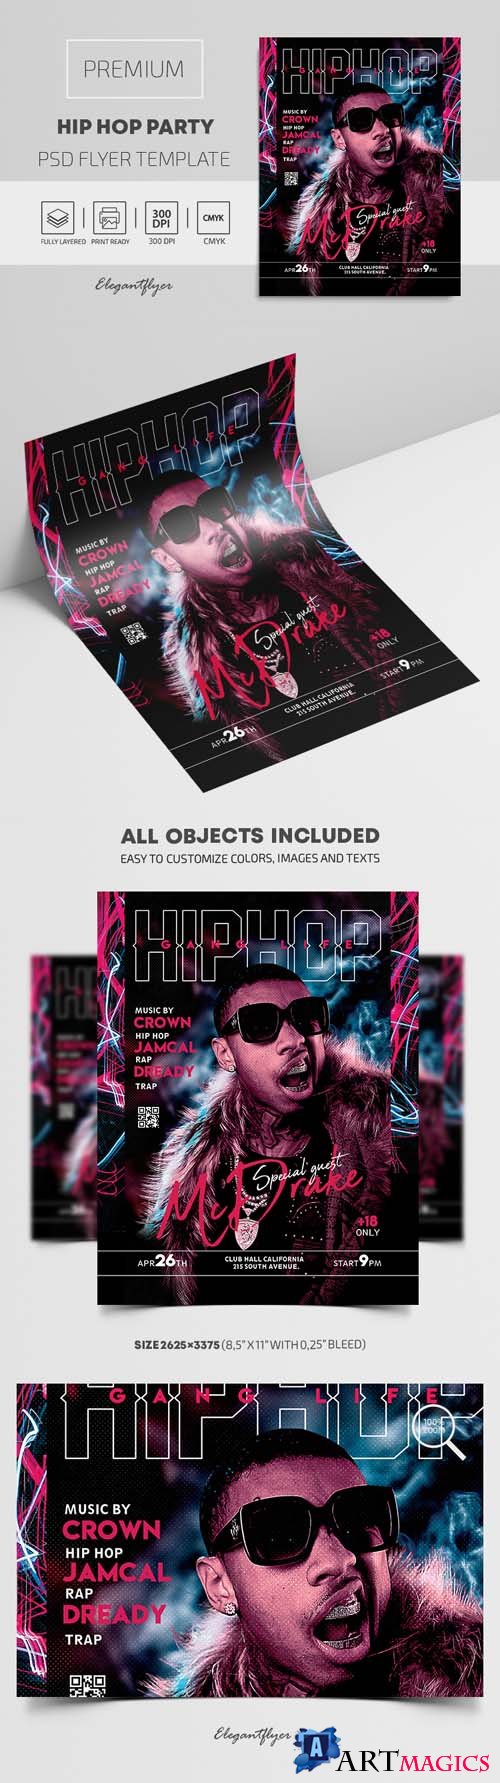 Hip Hop Party Premium PSD Flyer Template vol 2